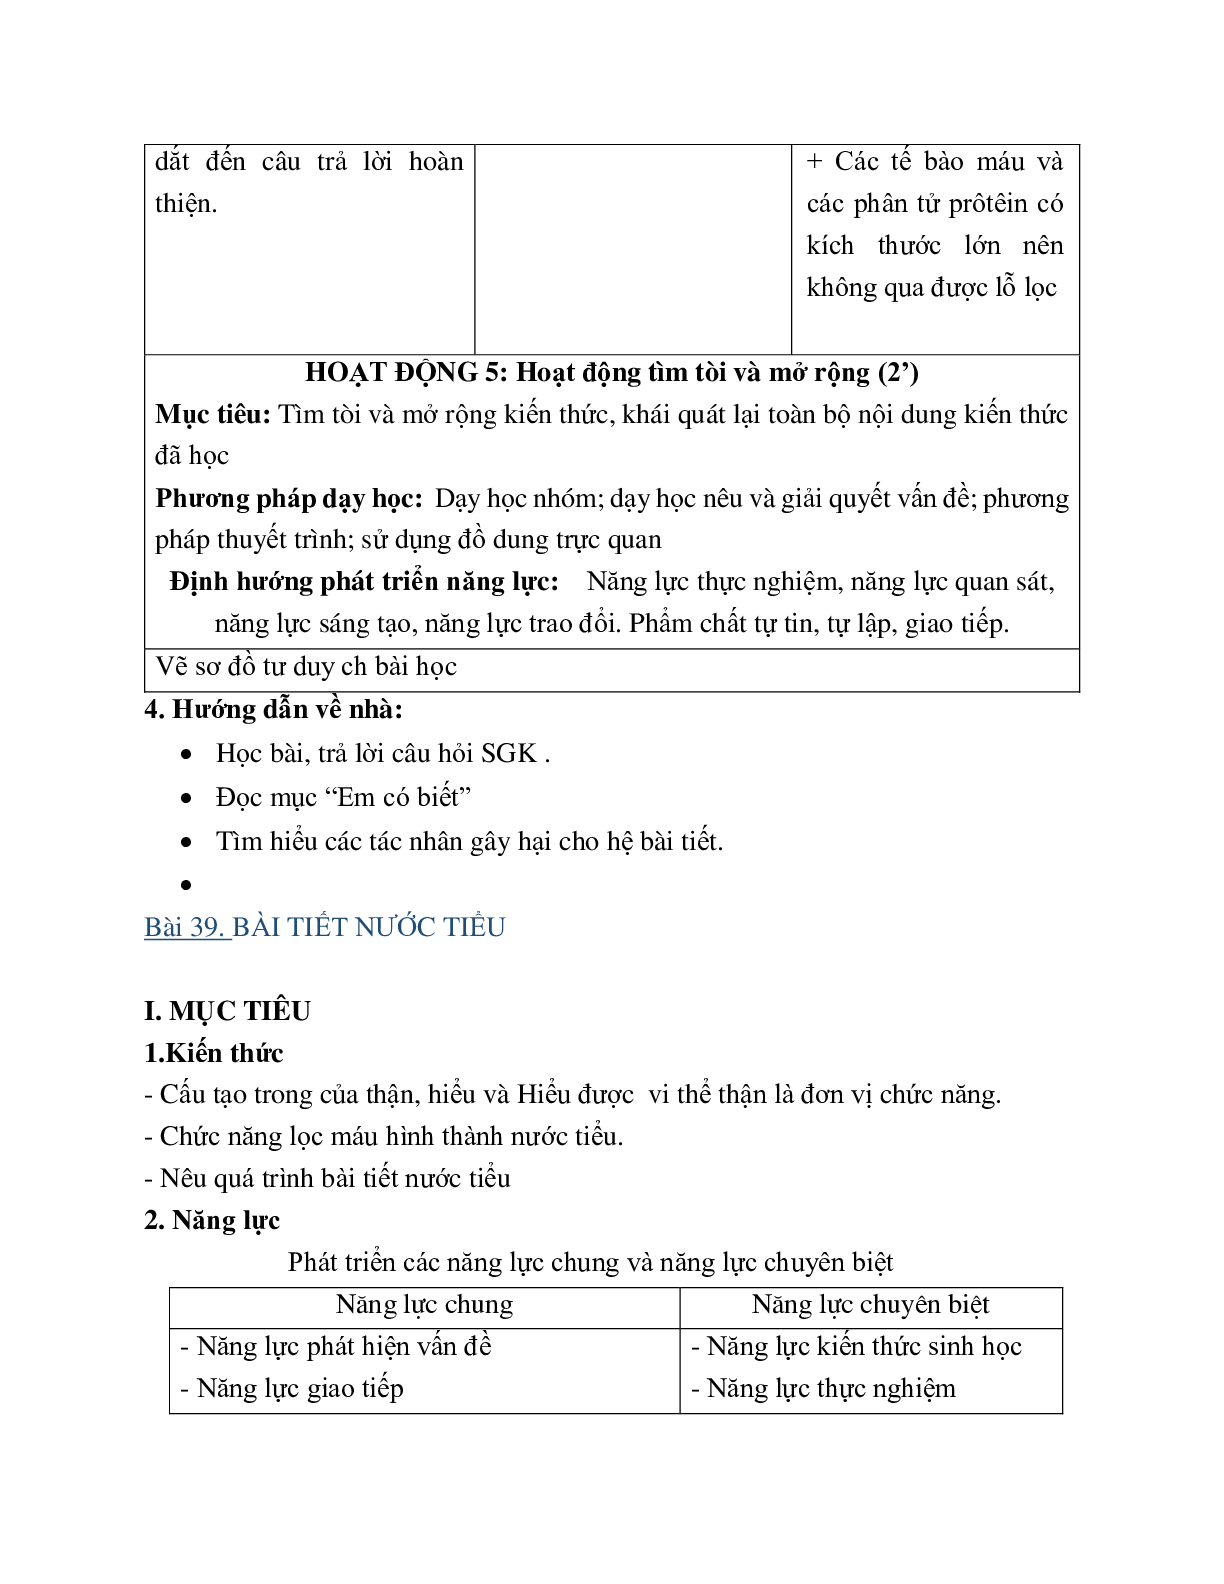 Giáo án Sinh học 8 Bài 39: Giáo án Sinh học 8 Bài tiết nước tiểu mới nhất - CV5512 (trang 7)